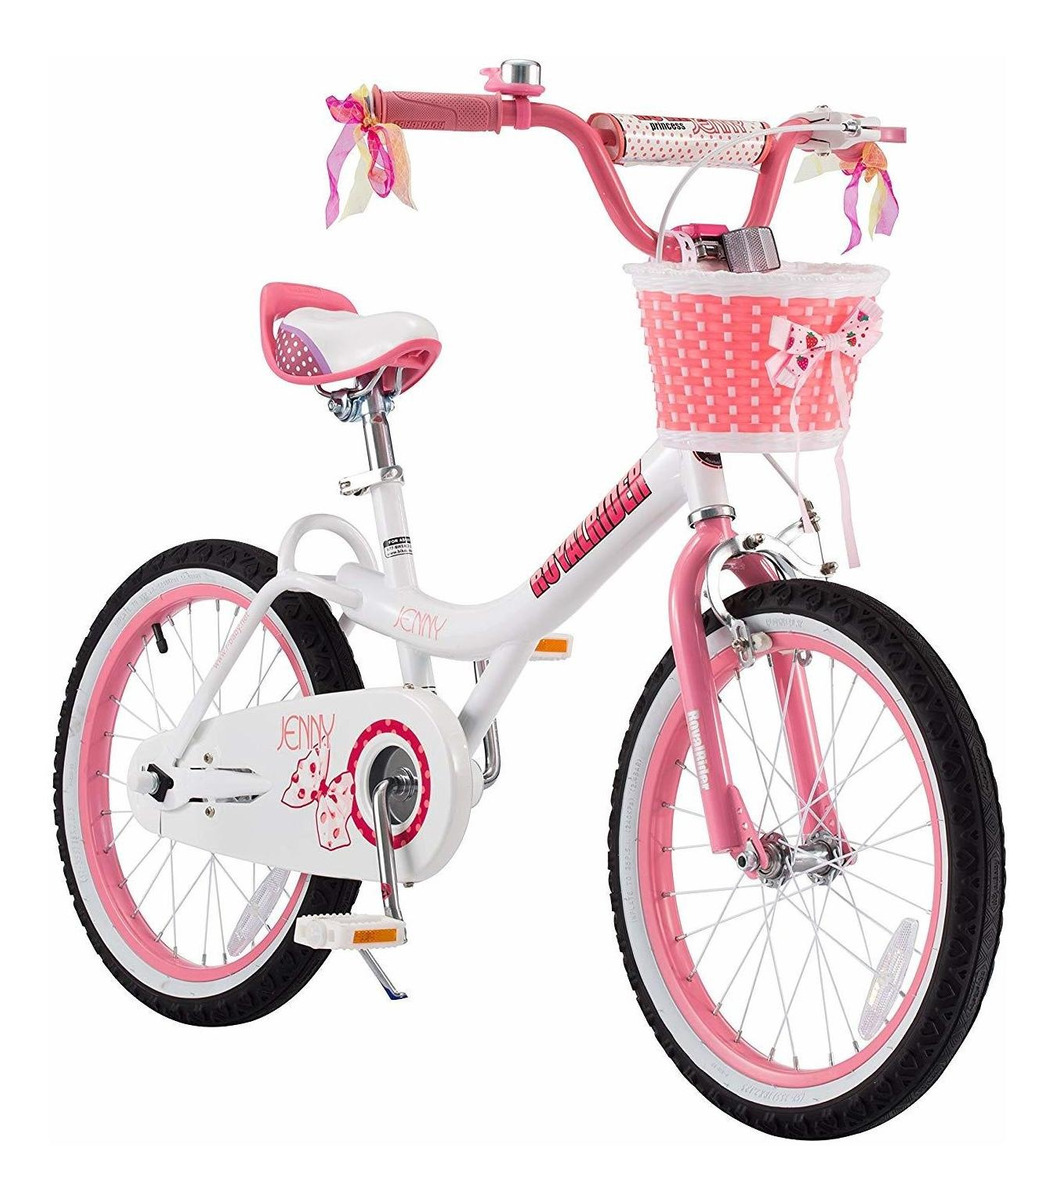 Bicicleta Barbie De Niña Canasta Aro 20. Envíos a todo Perú